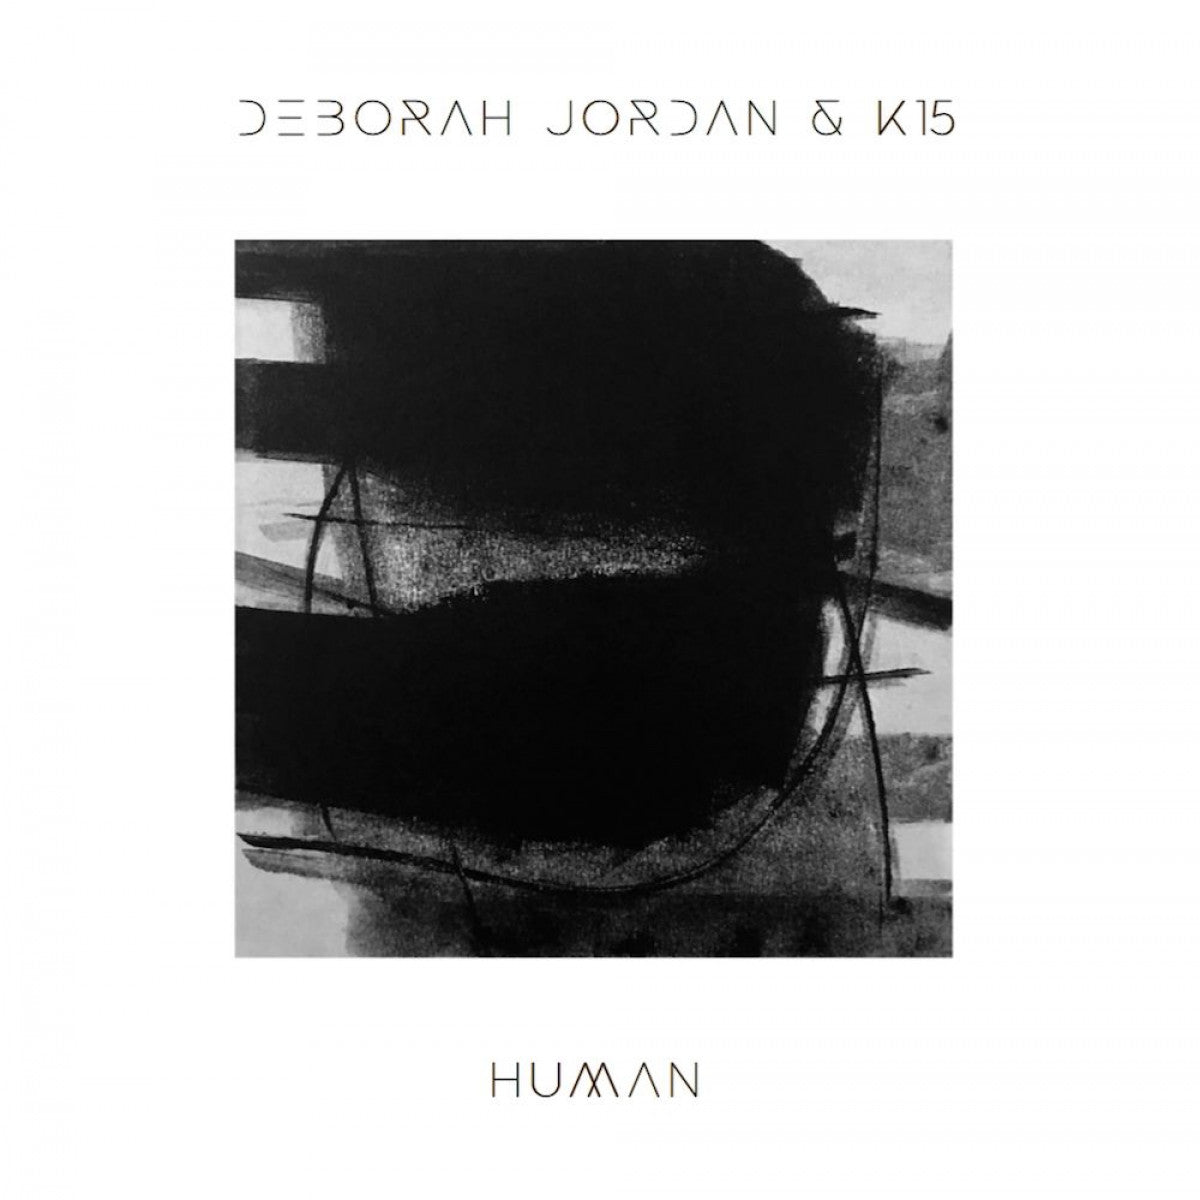 【LP】Deborah Jordan & K15 - Human -2LP-